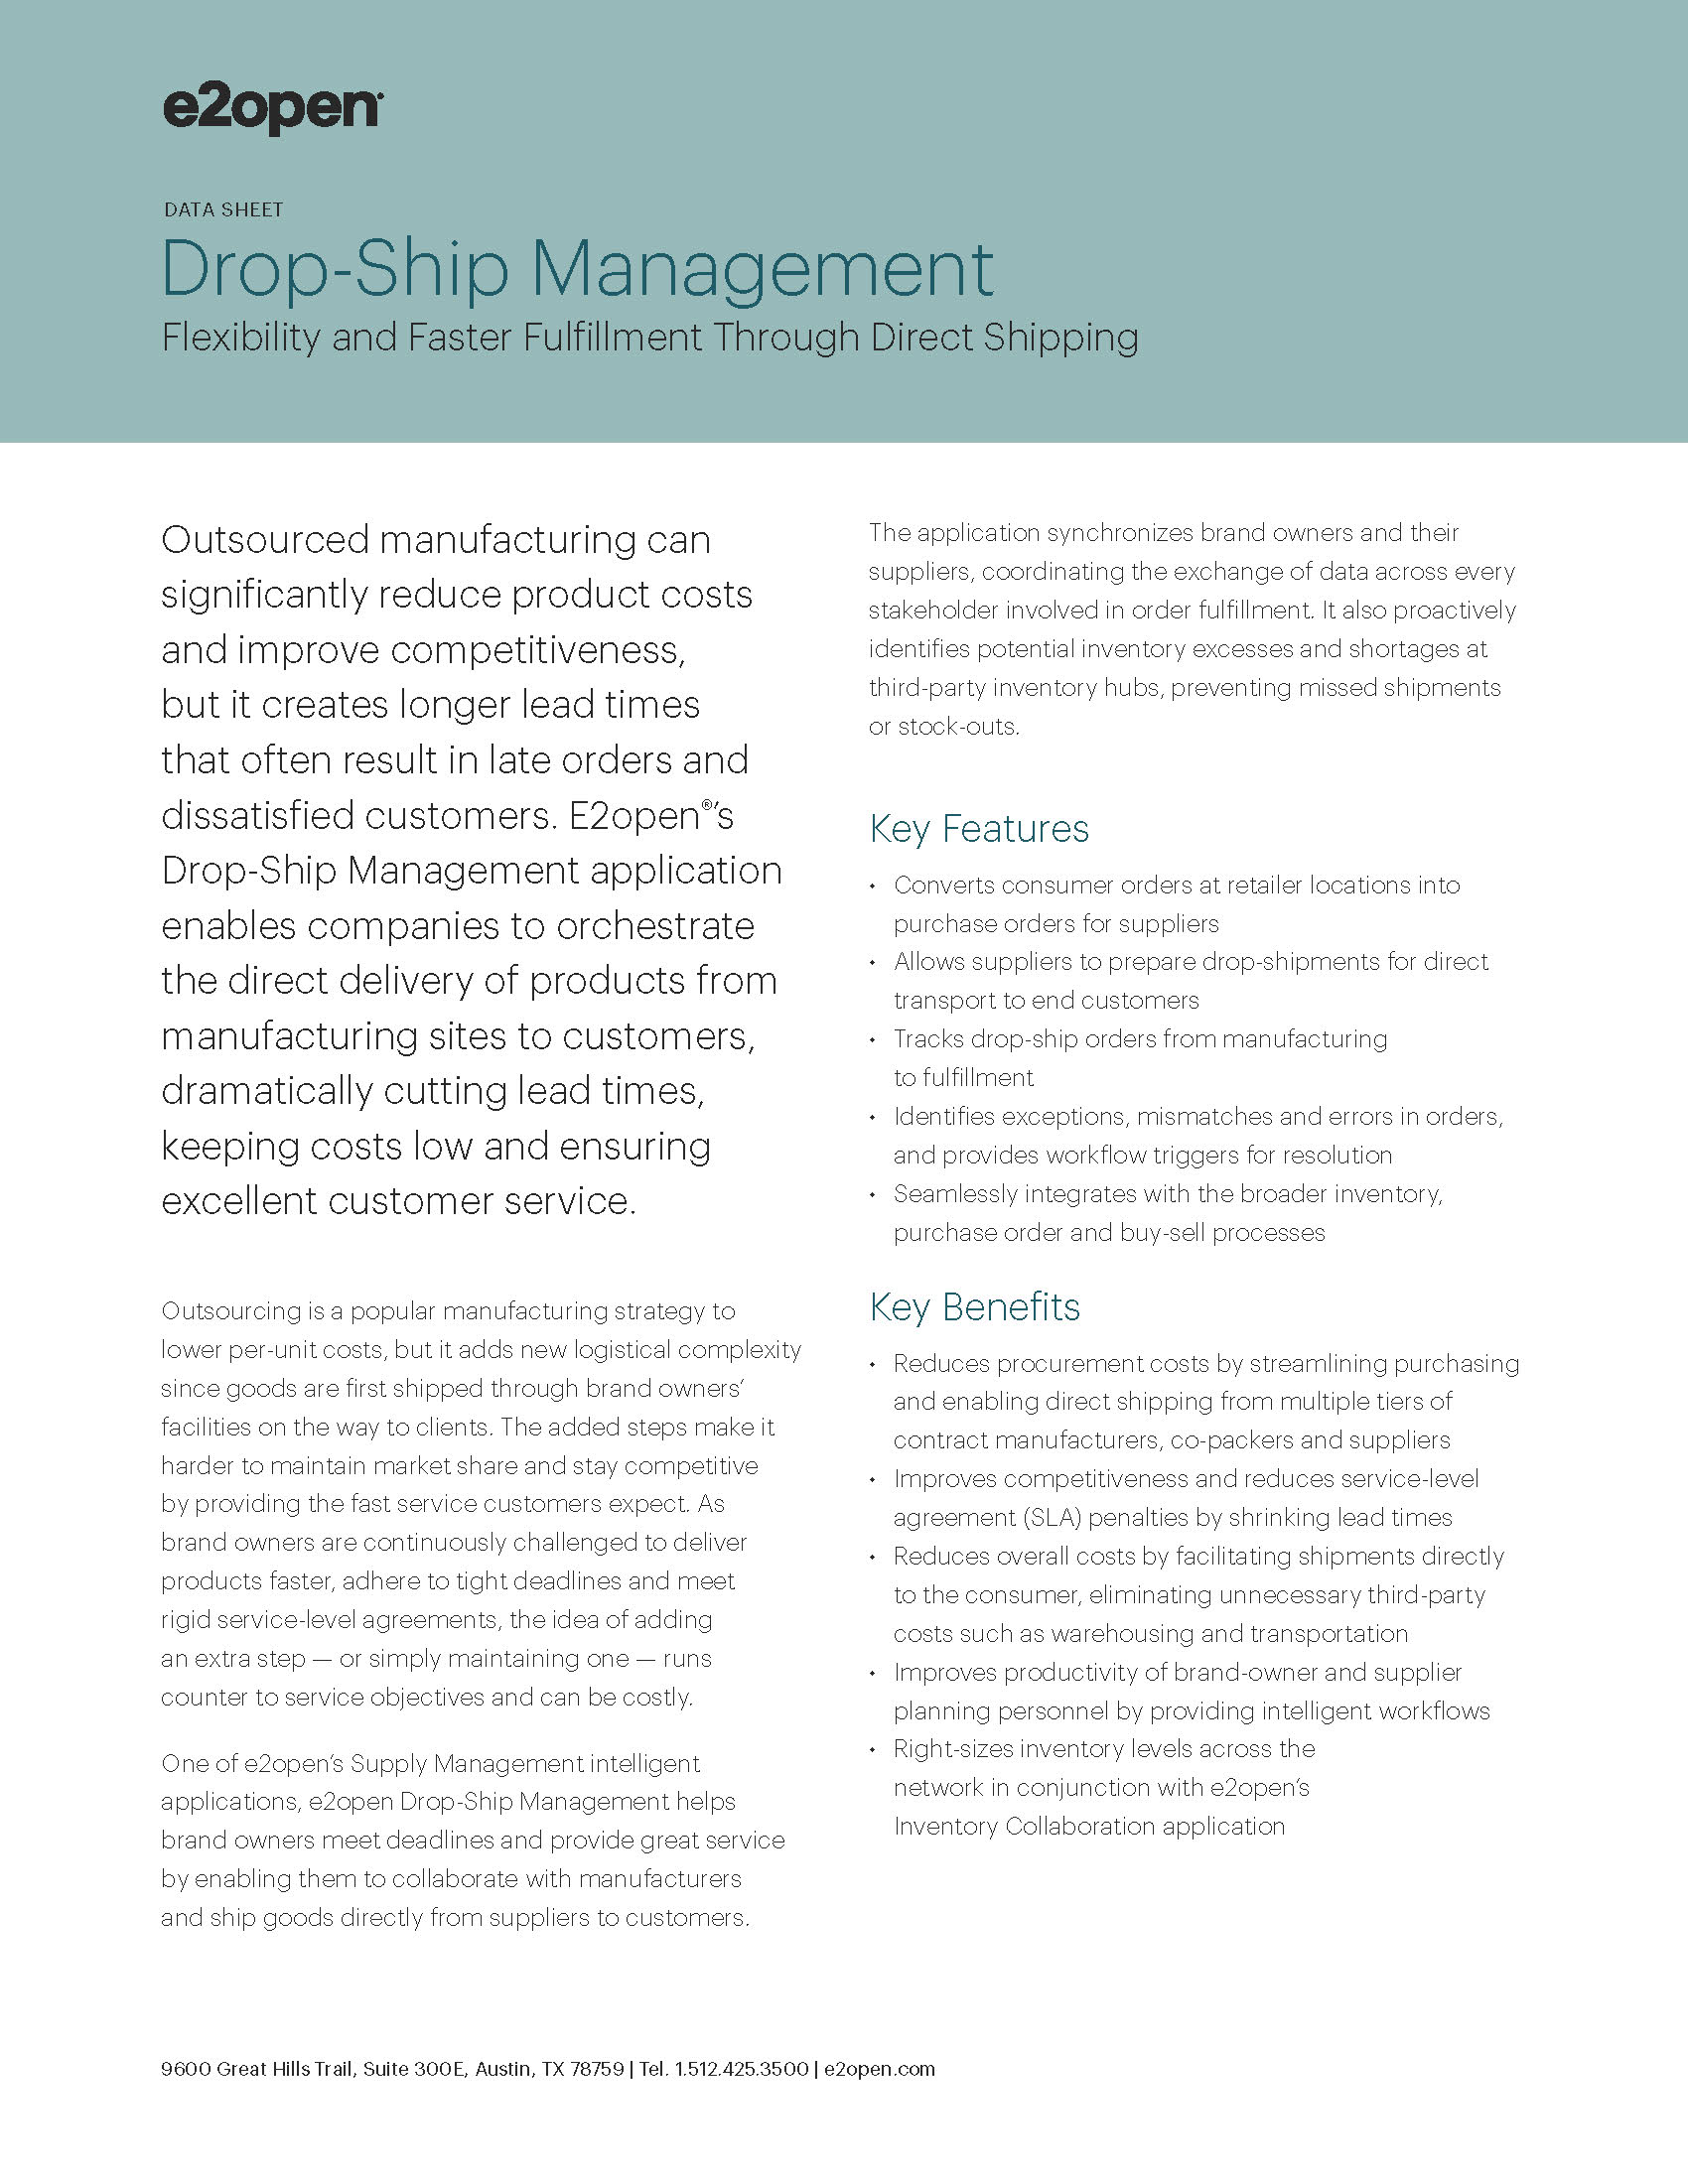 E2open Drop-Ship Management Data Sheet